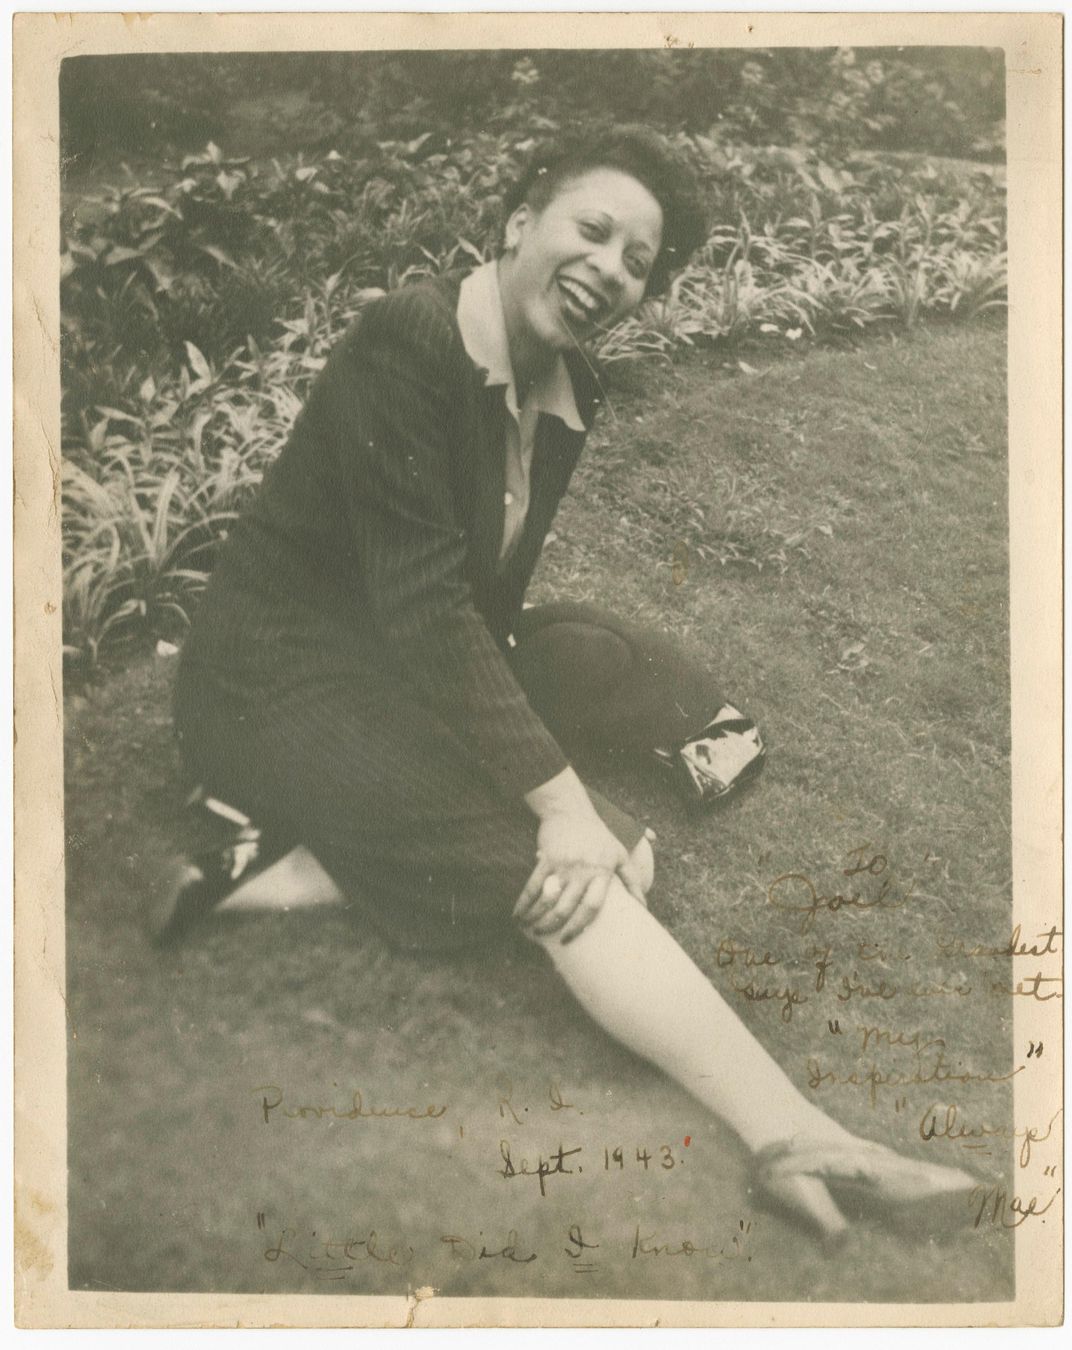 Mae Reeves in 1943